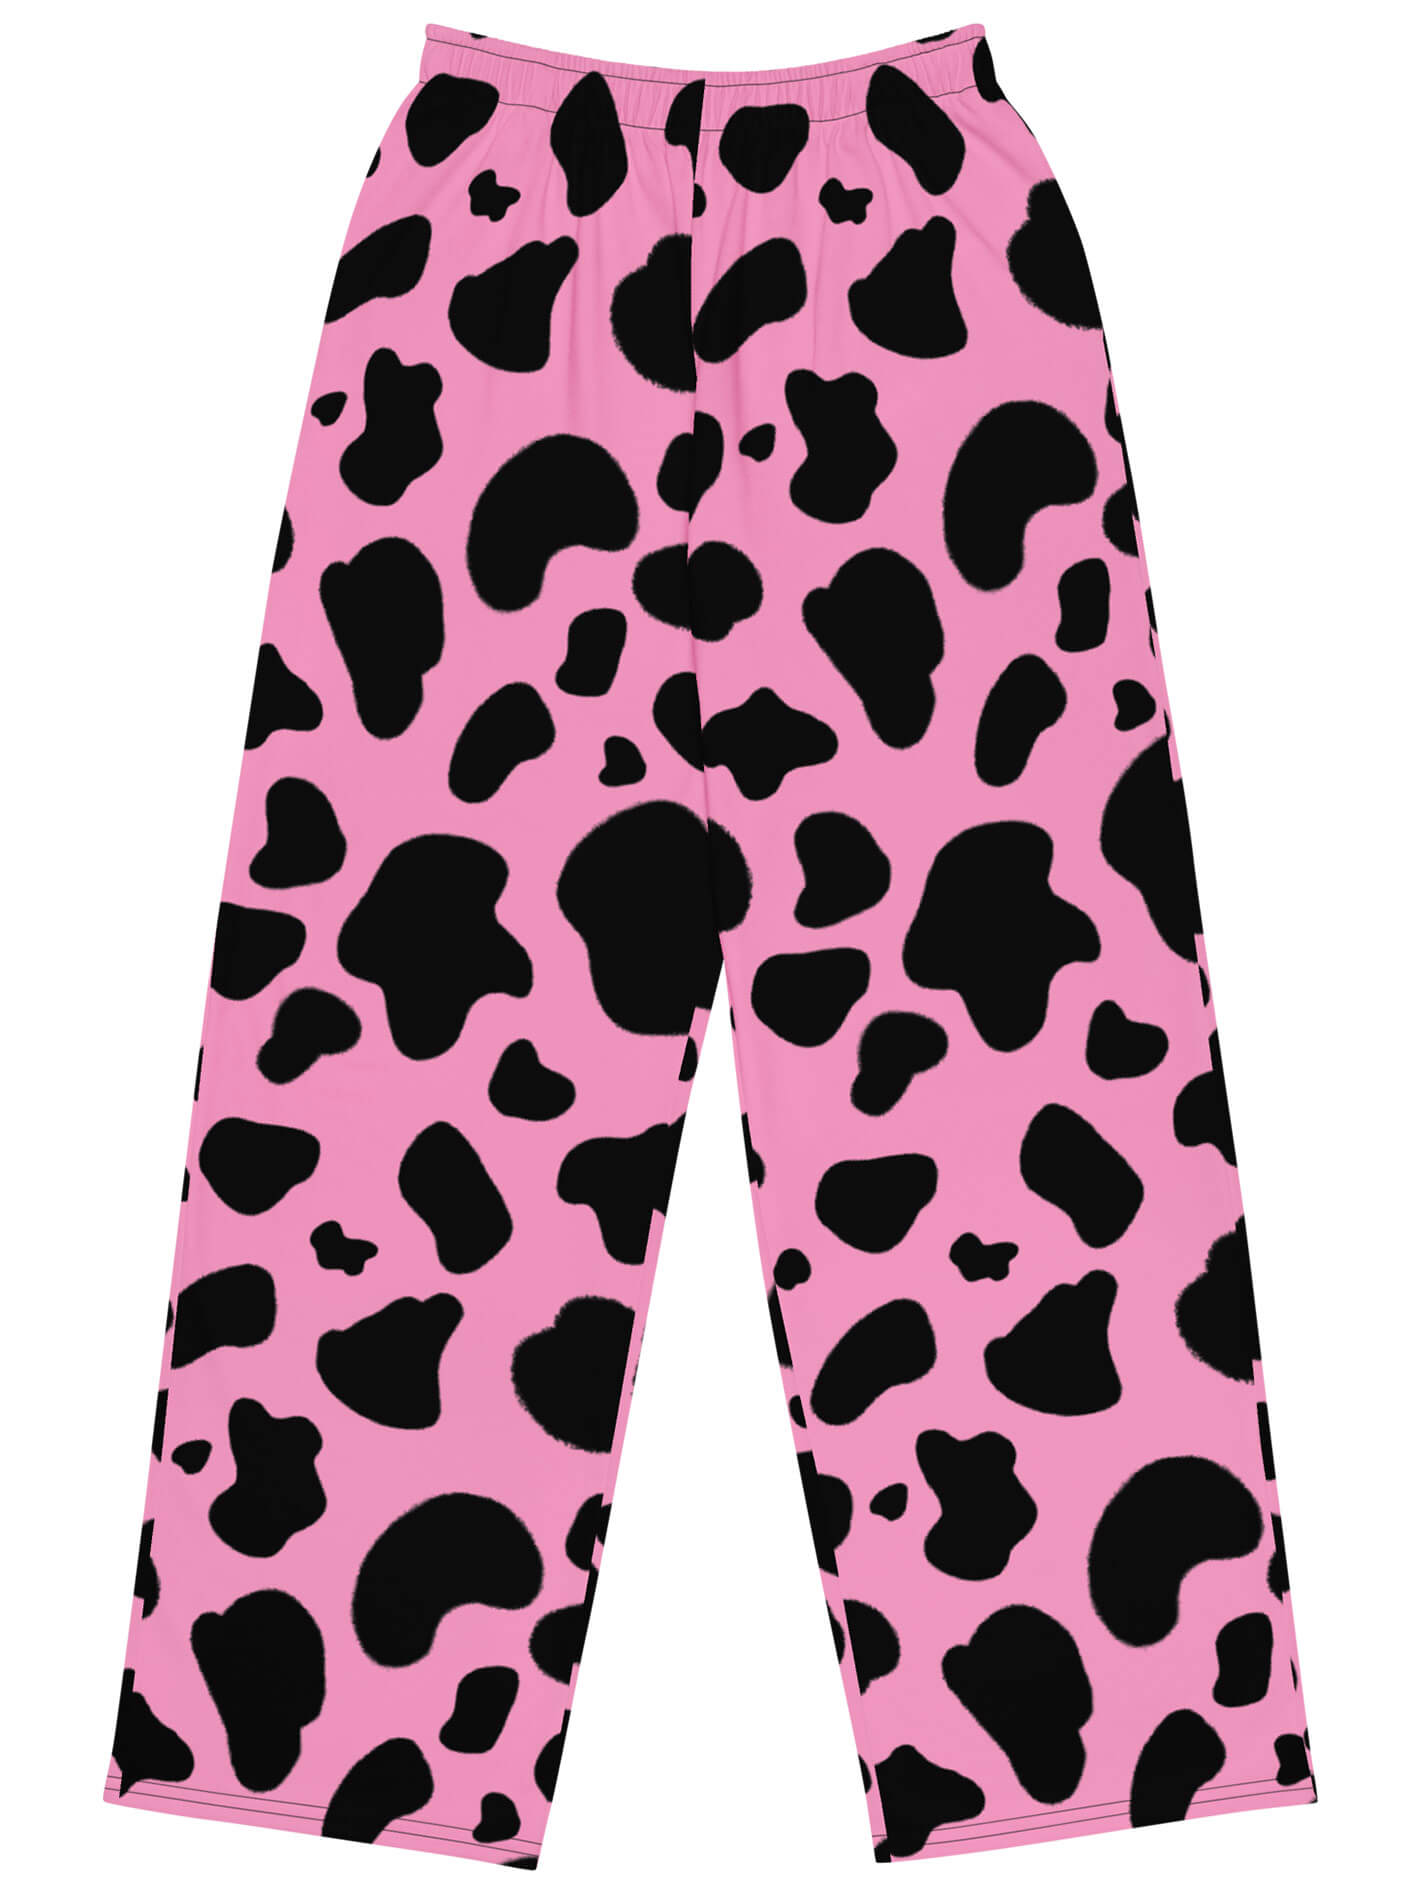 Pink cow print plus size pants.